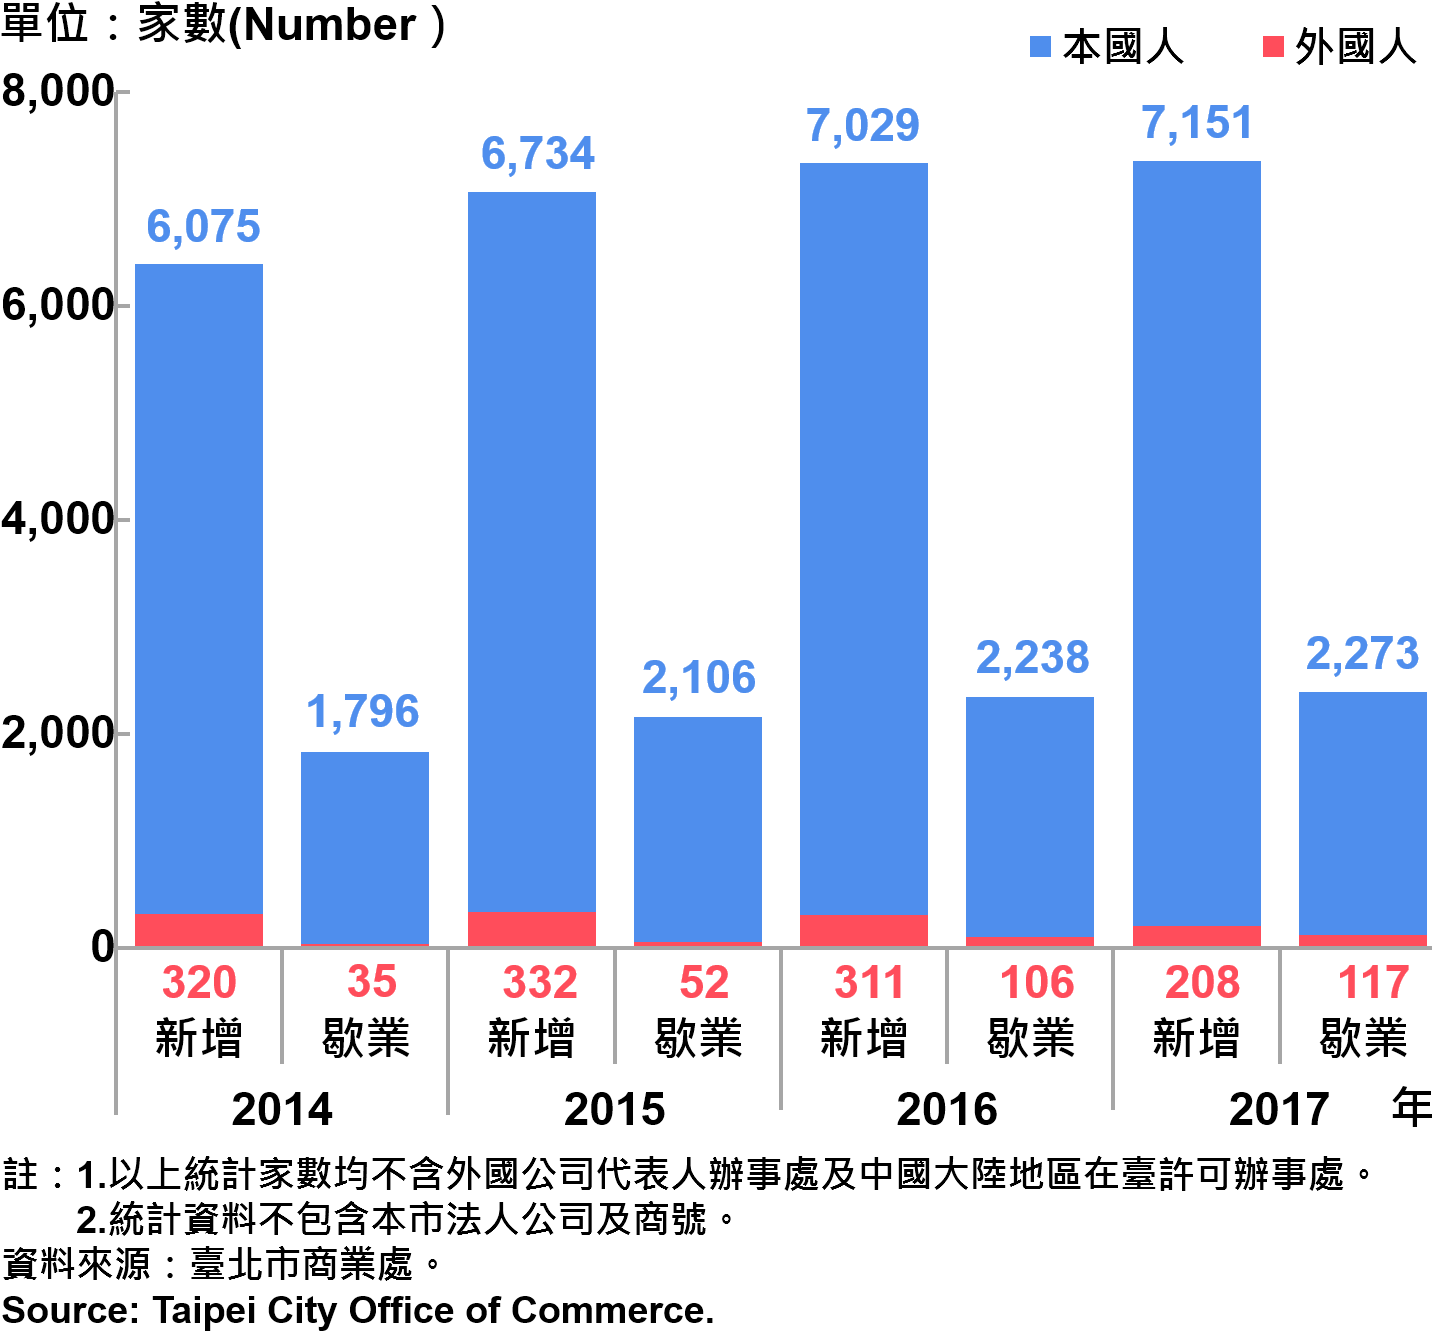 圖21、臺北市公司青創負責人為本國人與外國人分布情形—依新增及歇業家數—2017 Responsible Person of Newly Registered Companies In Taipei City by Nationality - Number of Incorporation—2017